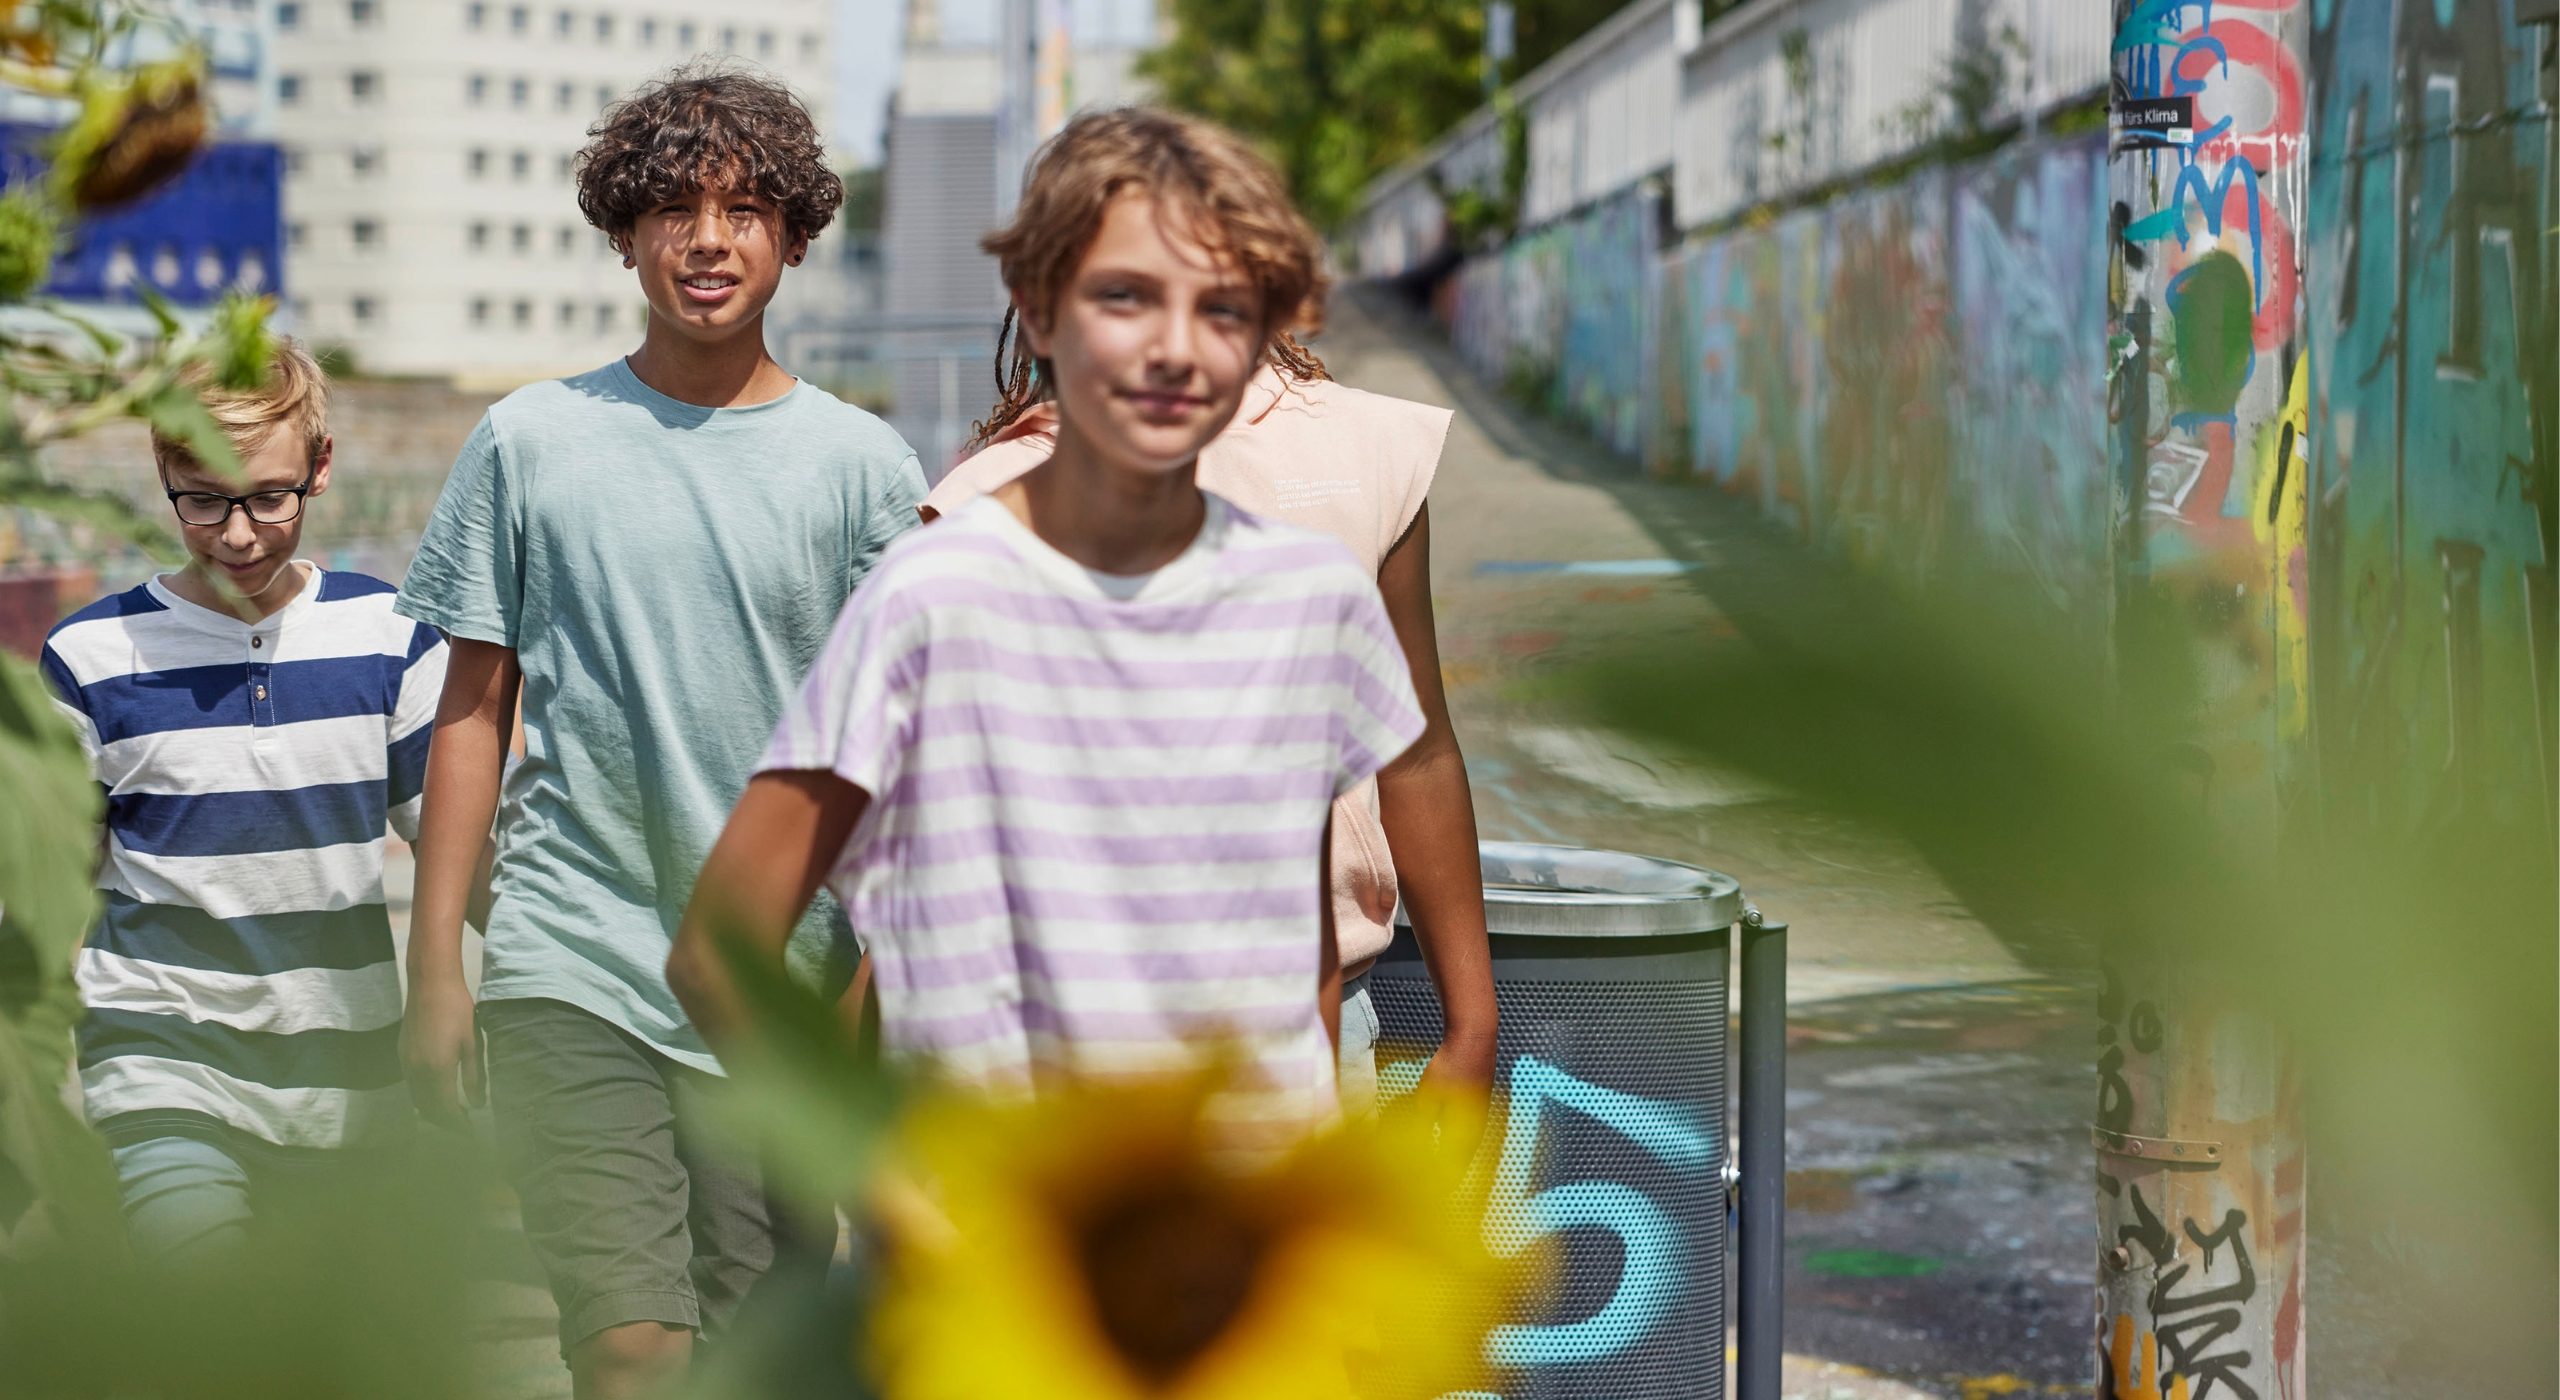 Drei junge Leute, sie sind etwa 13 Jahre alt, gehen gemeinsam spazieren. Im Vordergrund sieht man eine Sonnenblume.